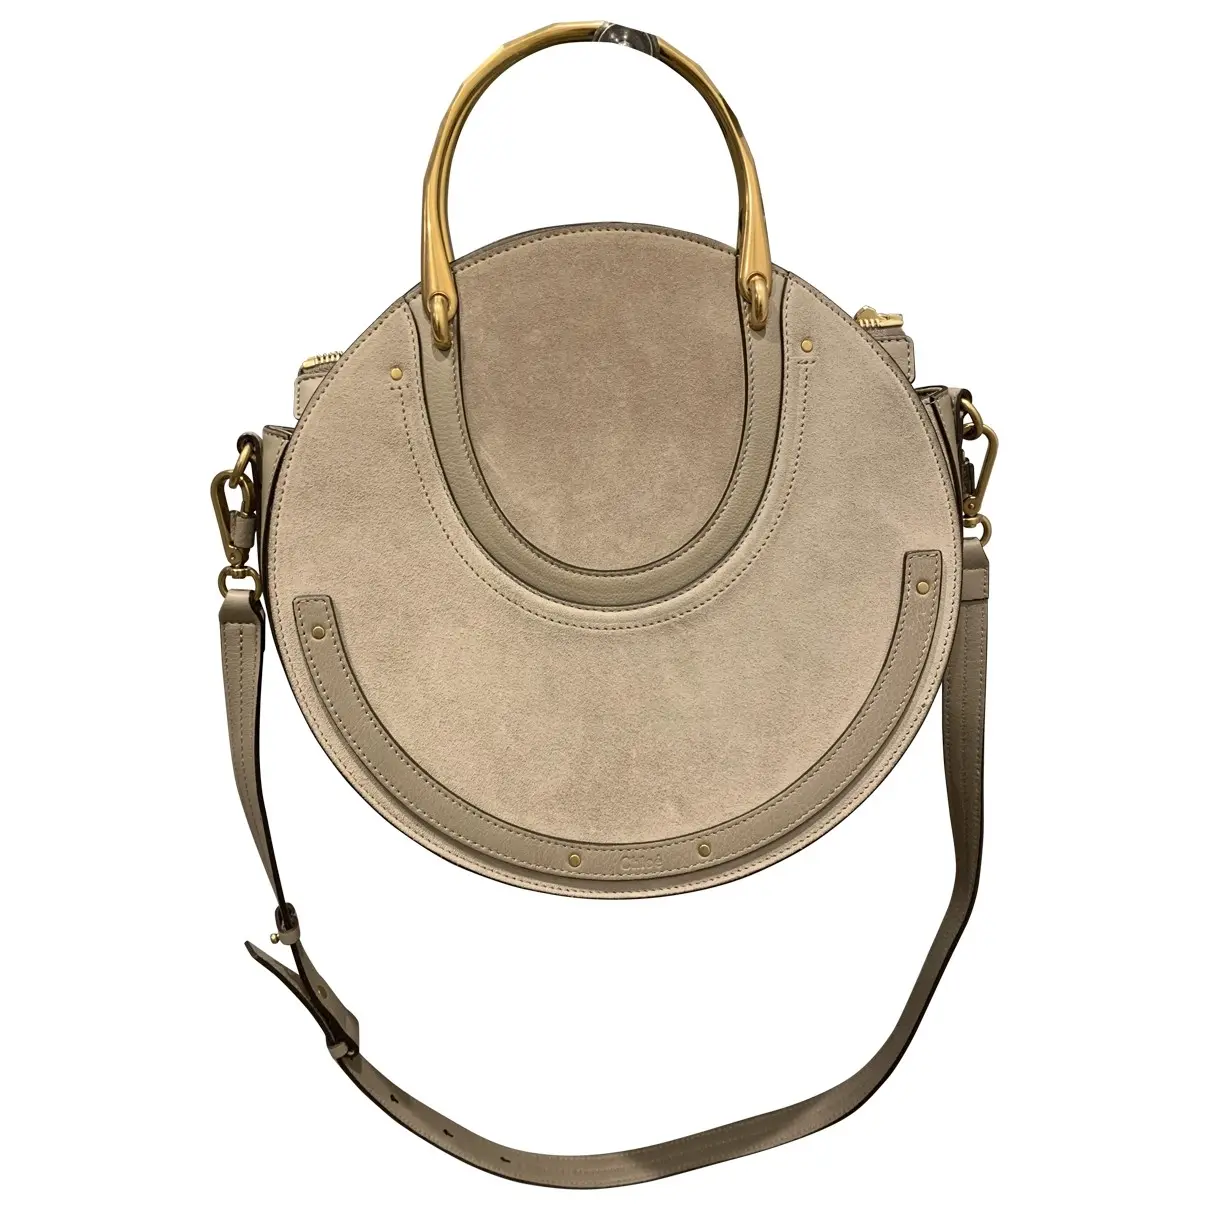 Pixie leather handbag Chloé